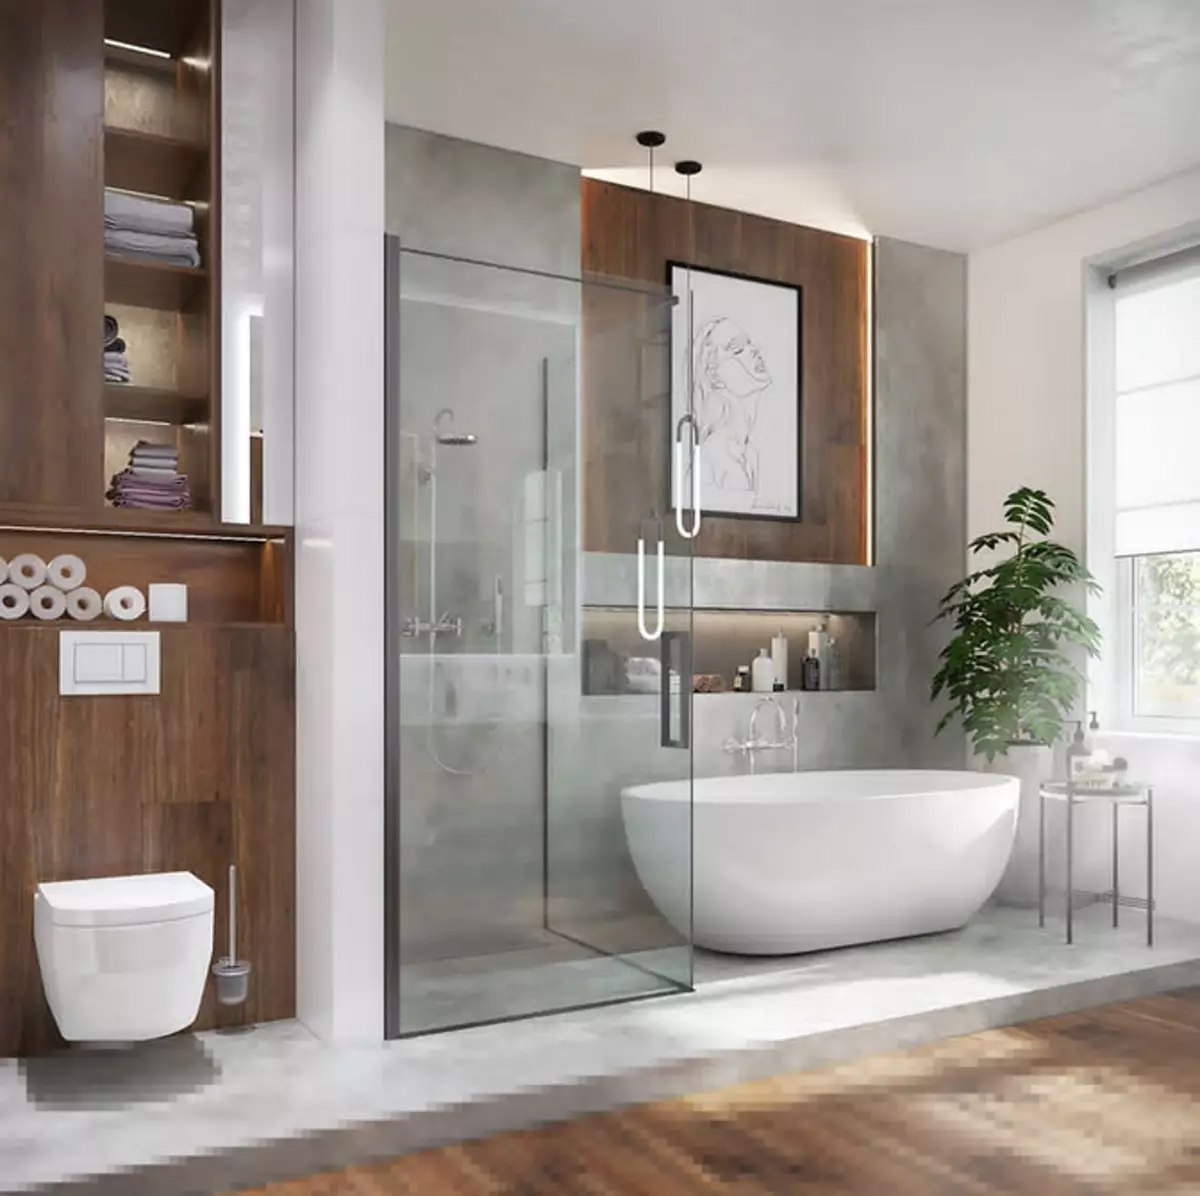 Deseño de baño con ducha e baño: ideas interiores en 75 fotos - IVD.RU 4108_24